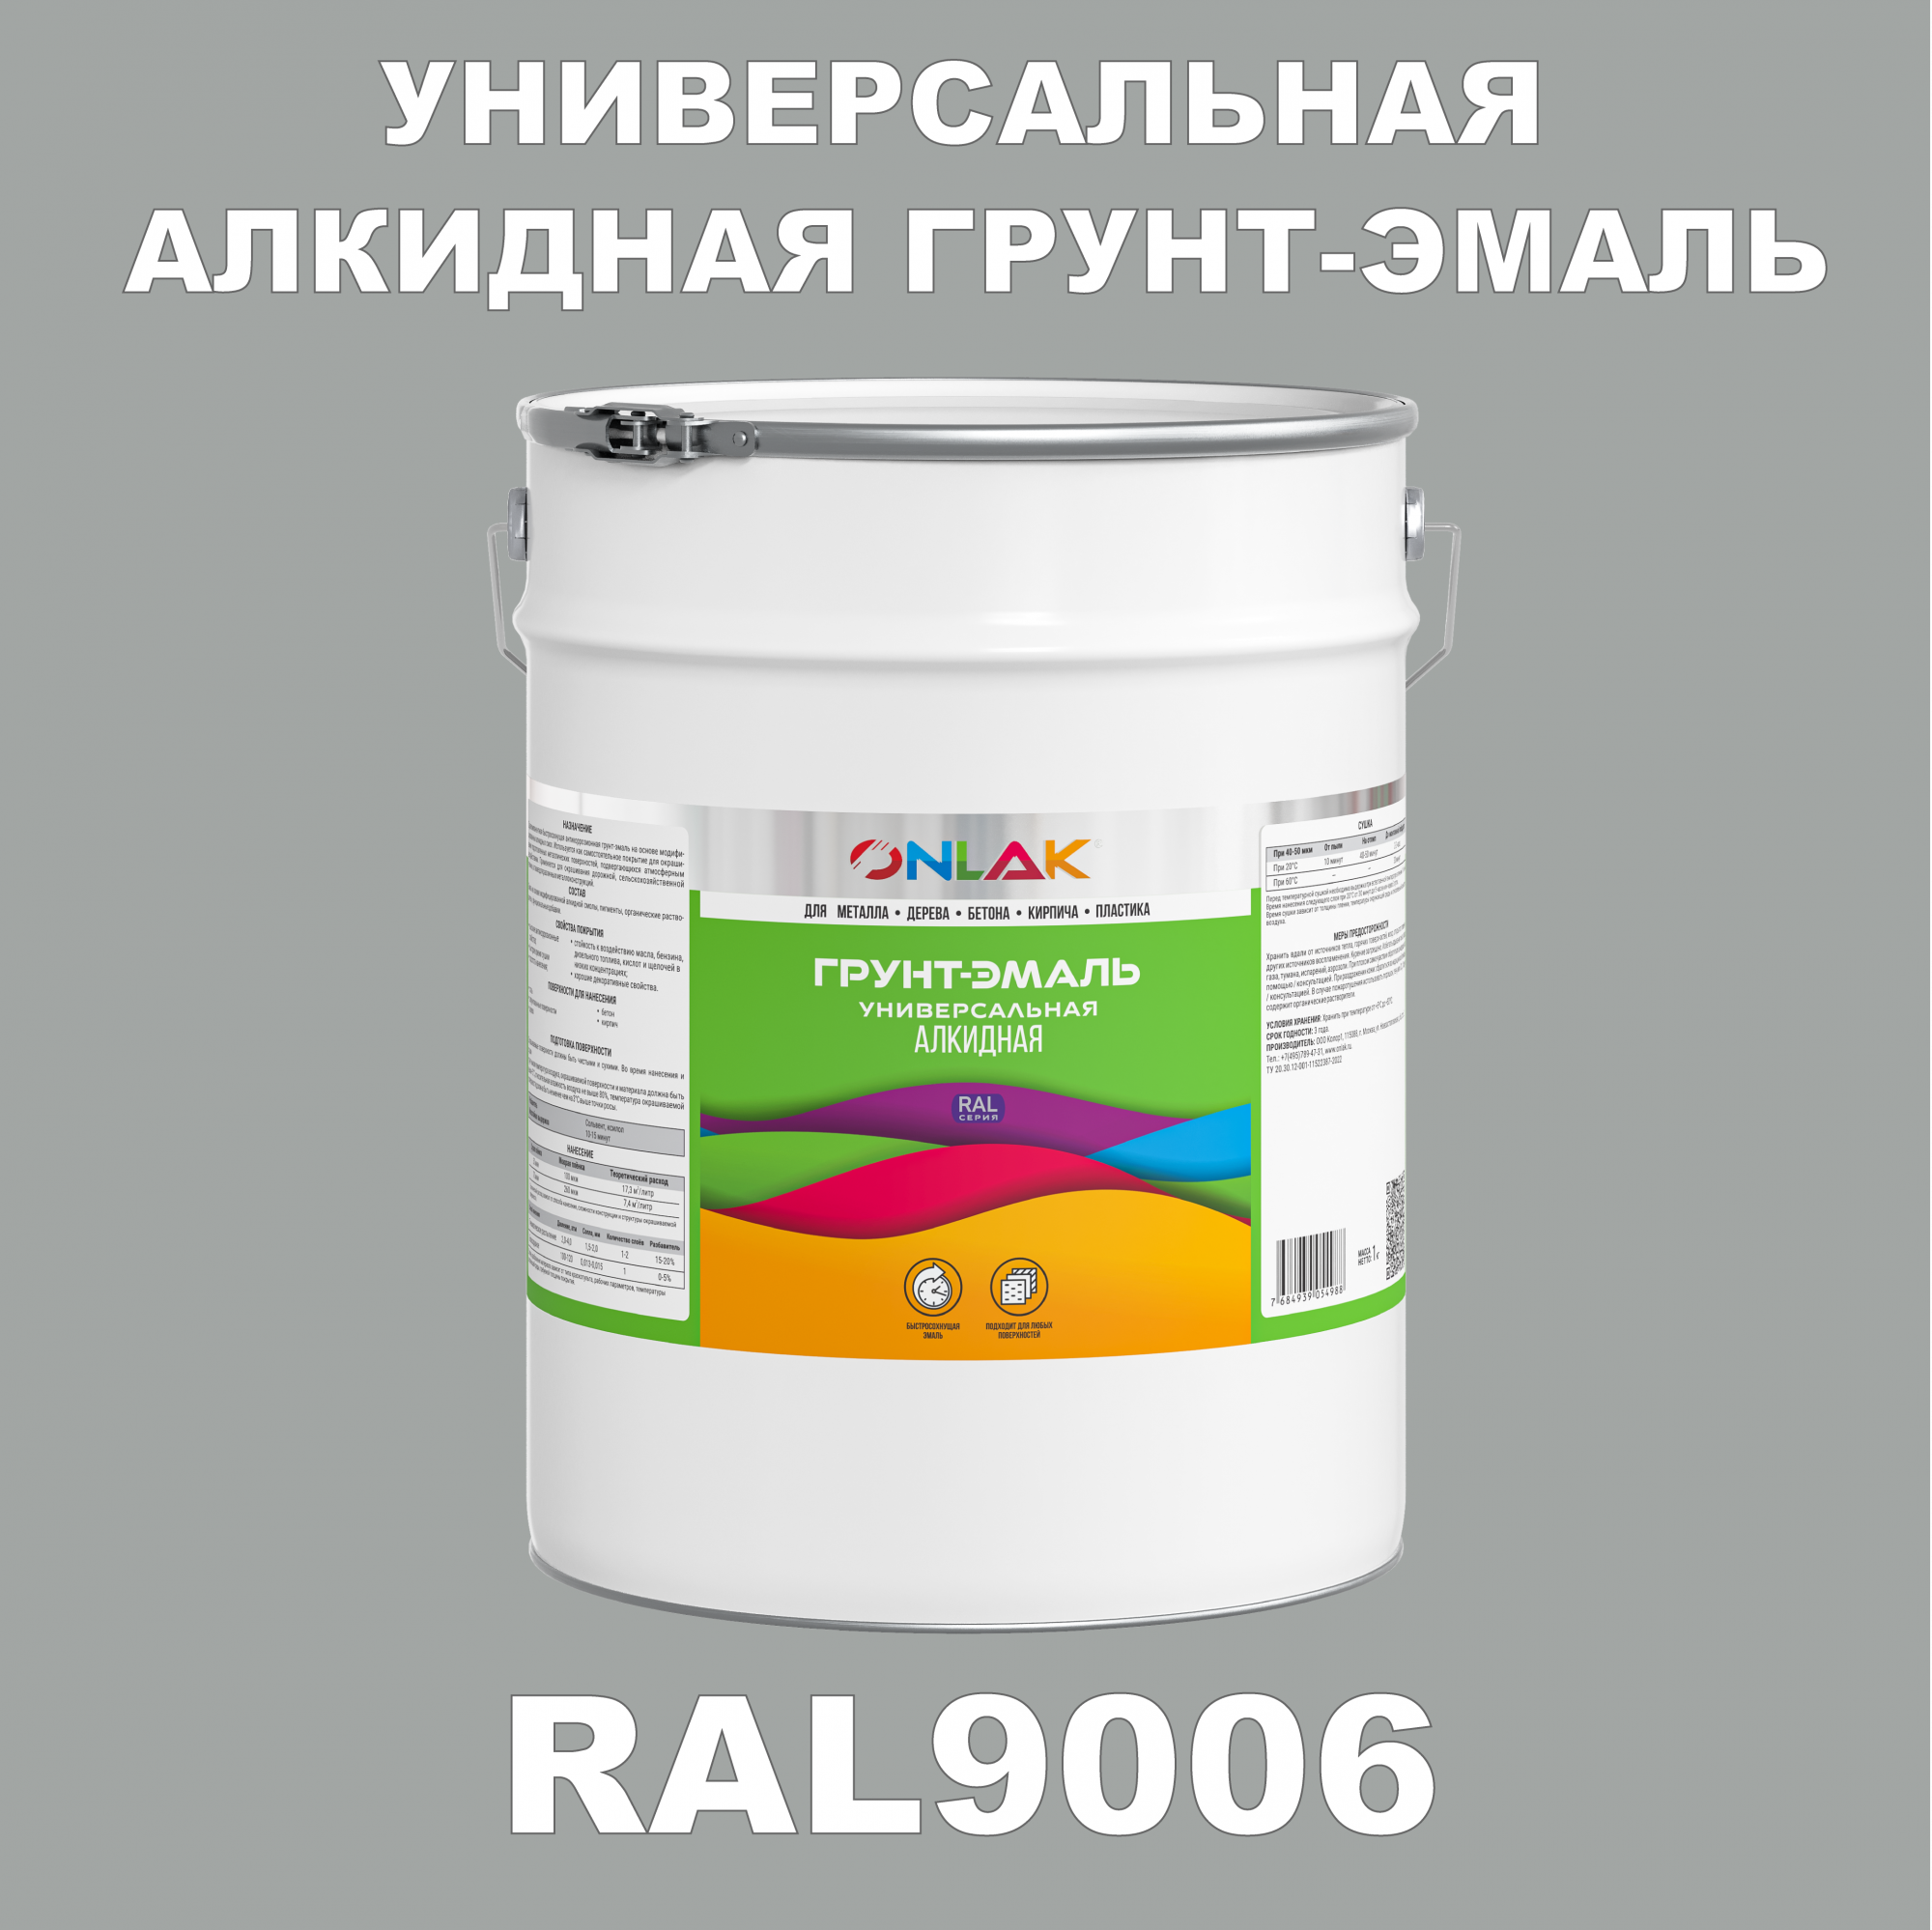 Грунт-эмаль ONLAK 1К RAL9006 антикоррозионная алкидная по металлу по ржавчине 20 кг грунт эмаль престиж по ржавчине алкидная зеленая 1 9 кг